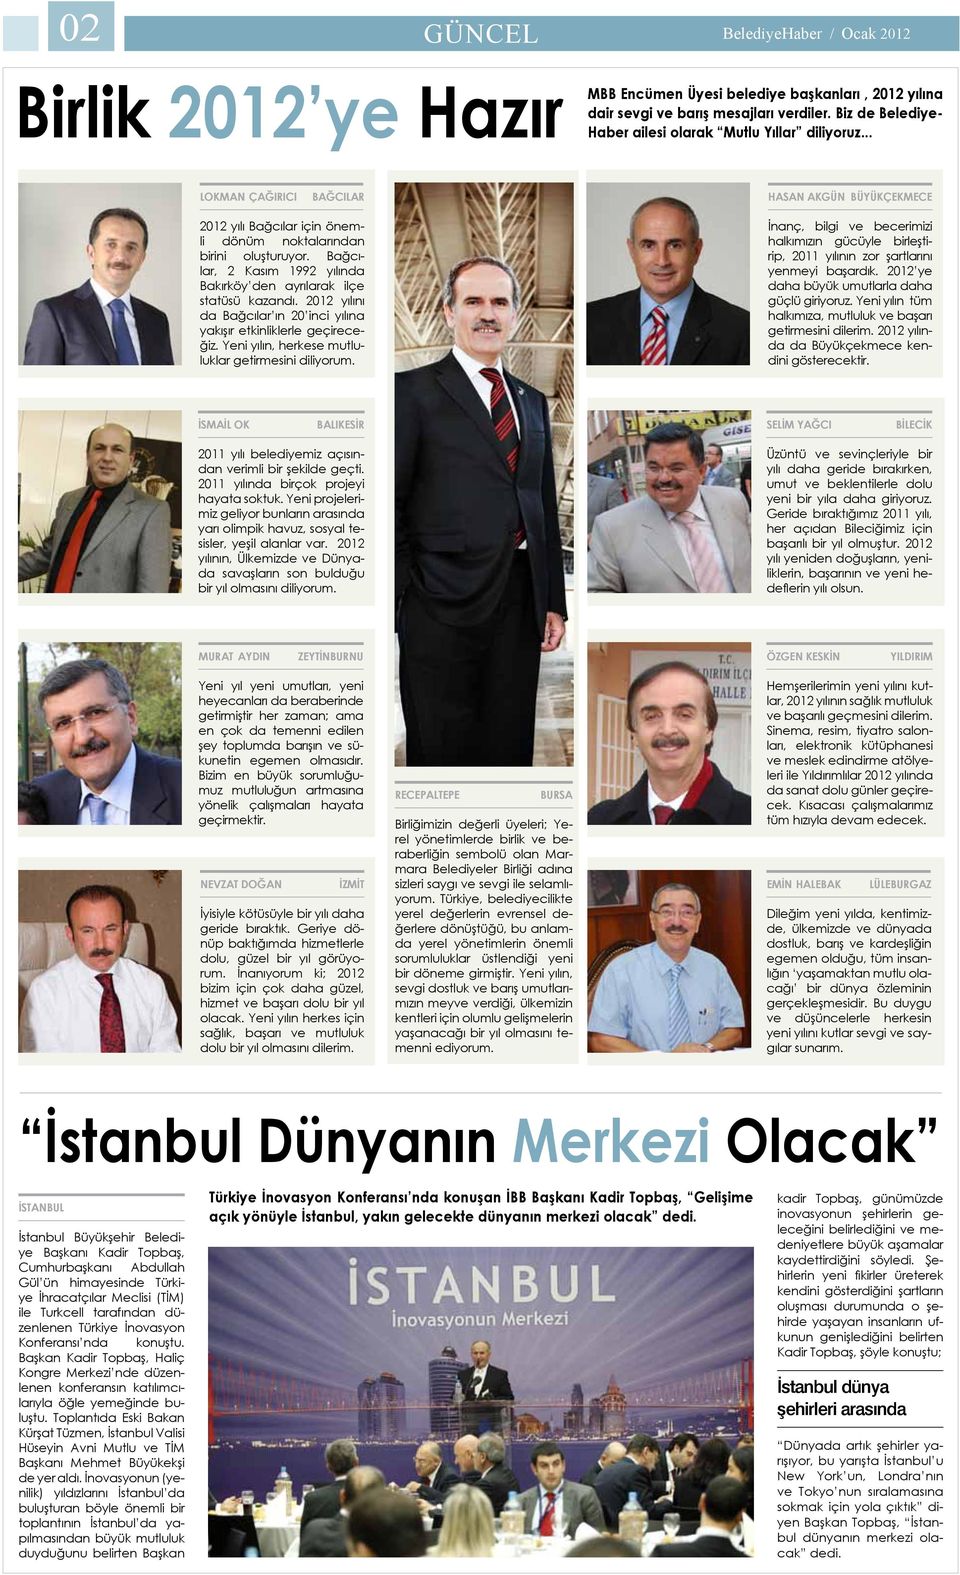 Bağcılar, 2 Kasım 1992 yılında Bakırköy den ayrılarak ilçe statüsü kazandı. 2012 yılını da Bağcılar ın 20 inci yılına yakışır etkinliklerle geçireceğiz.